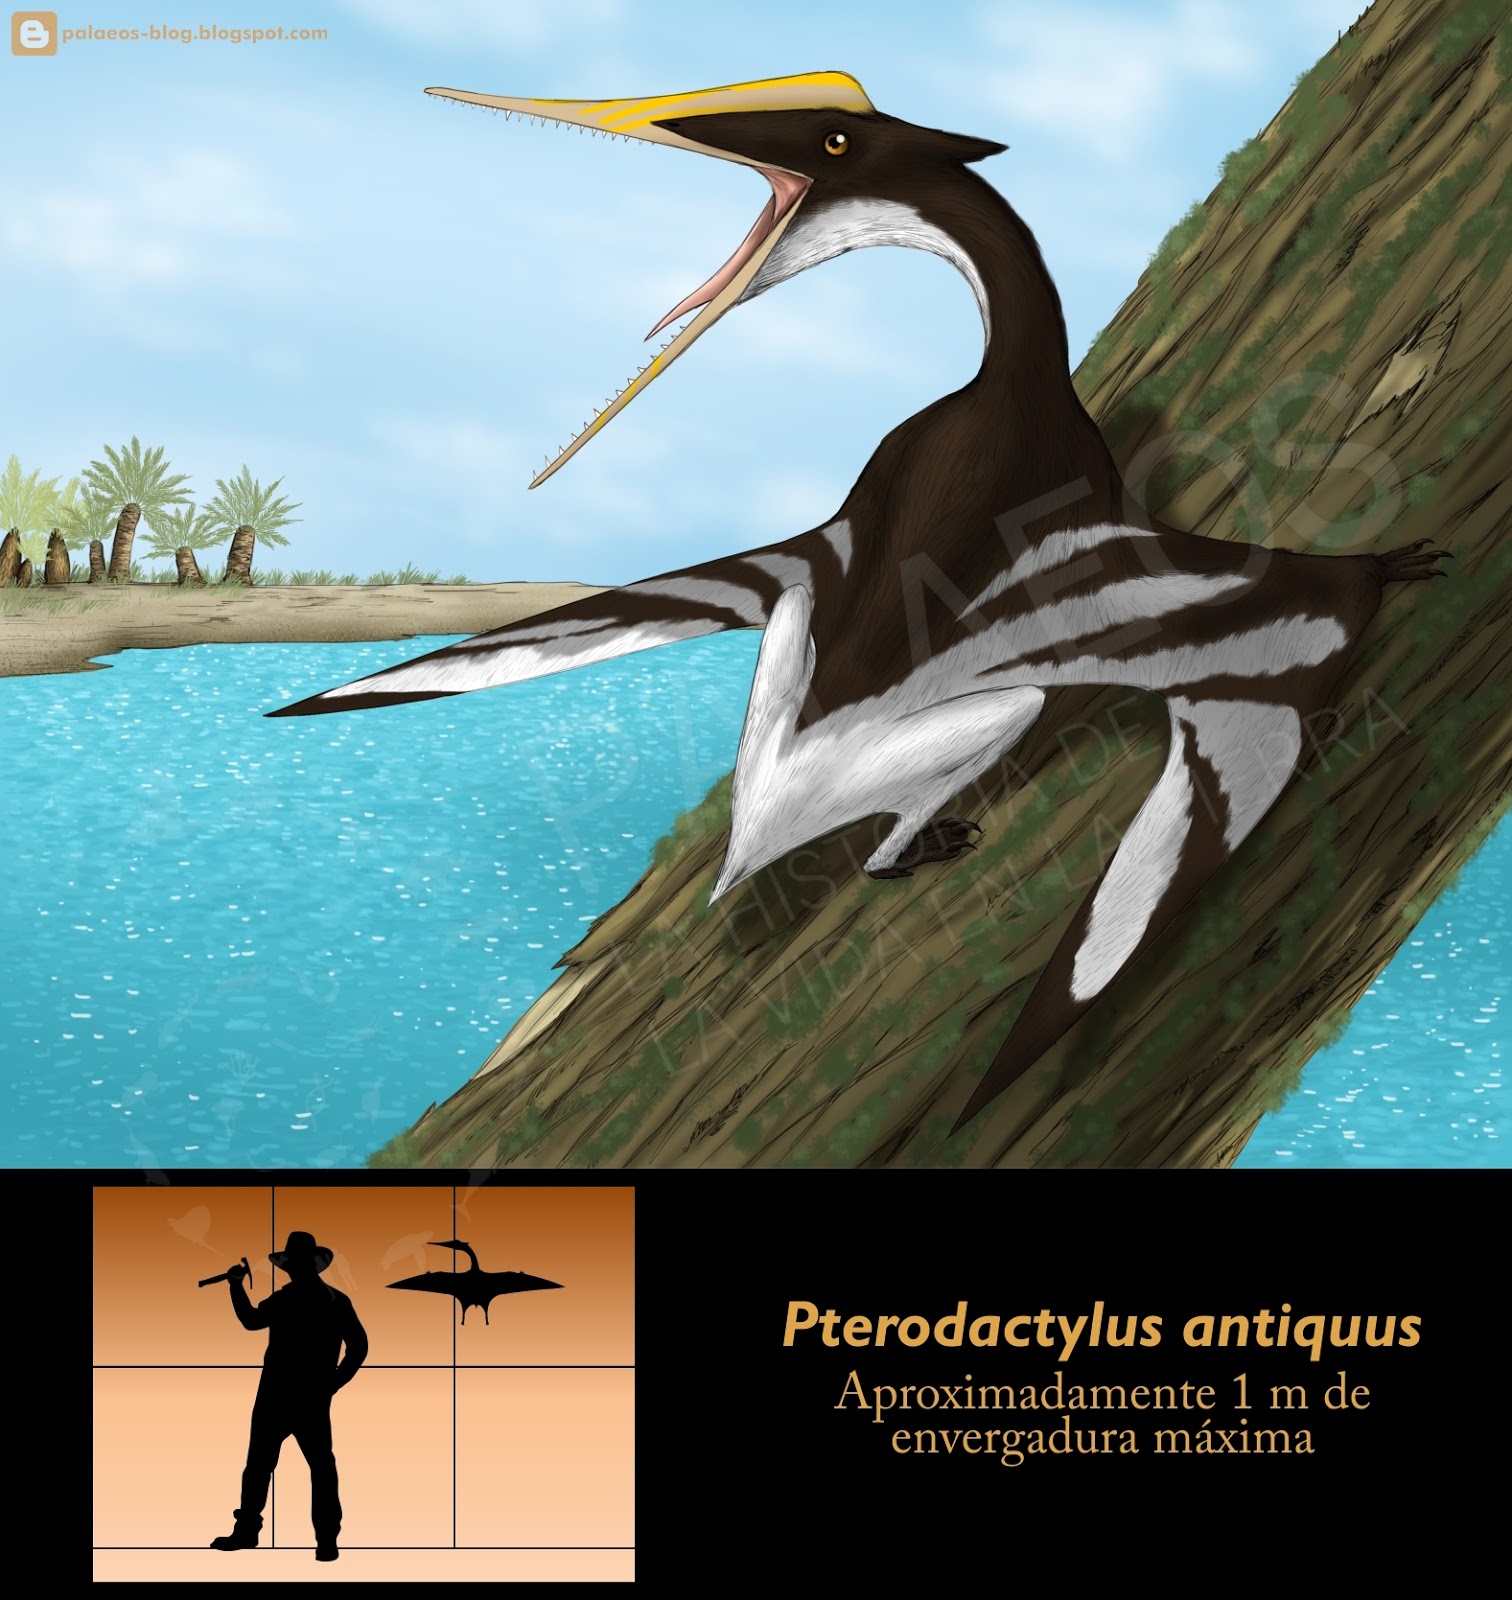  Pterodactylus